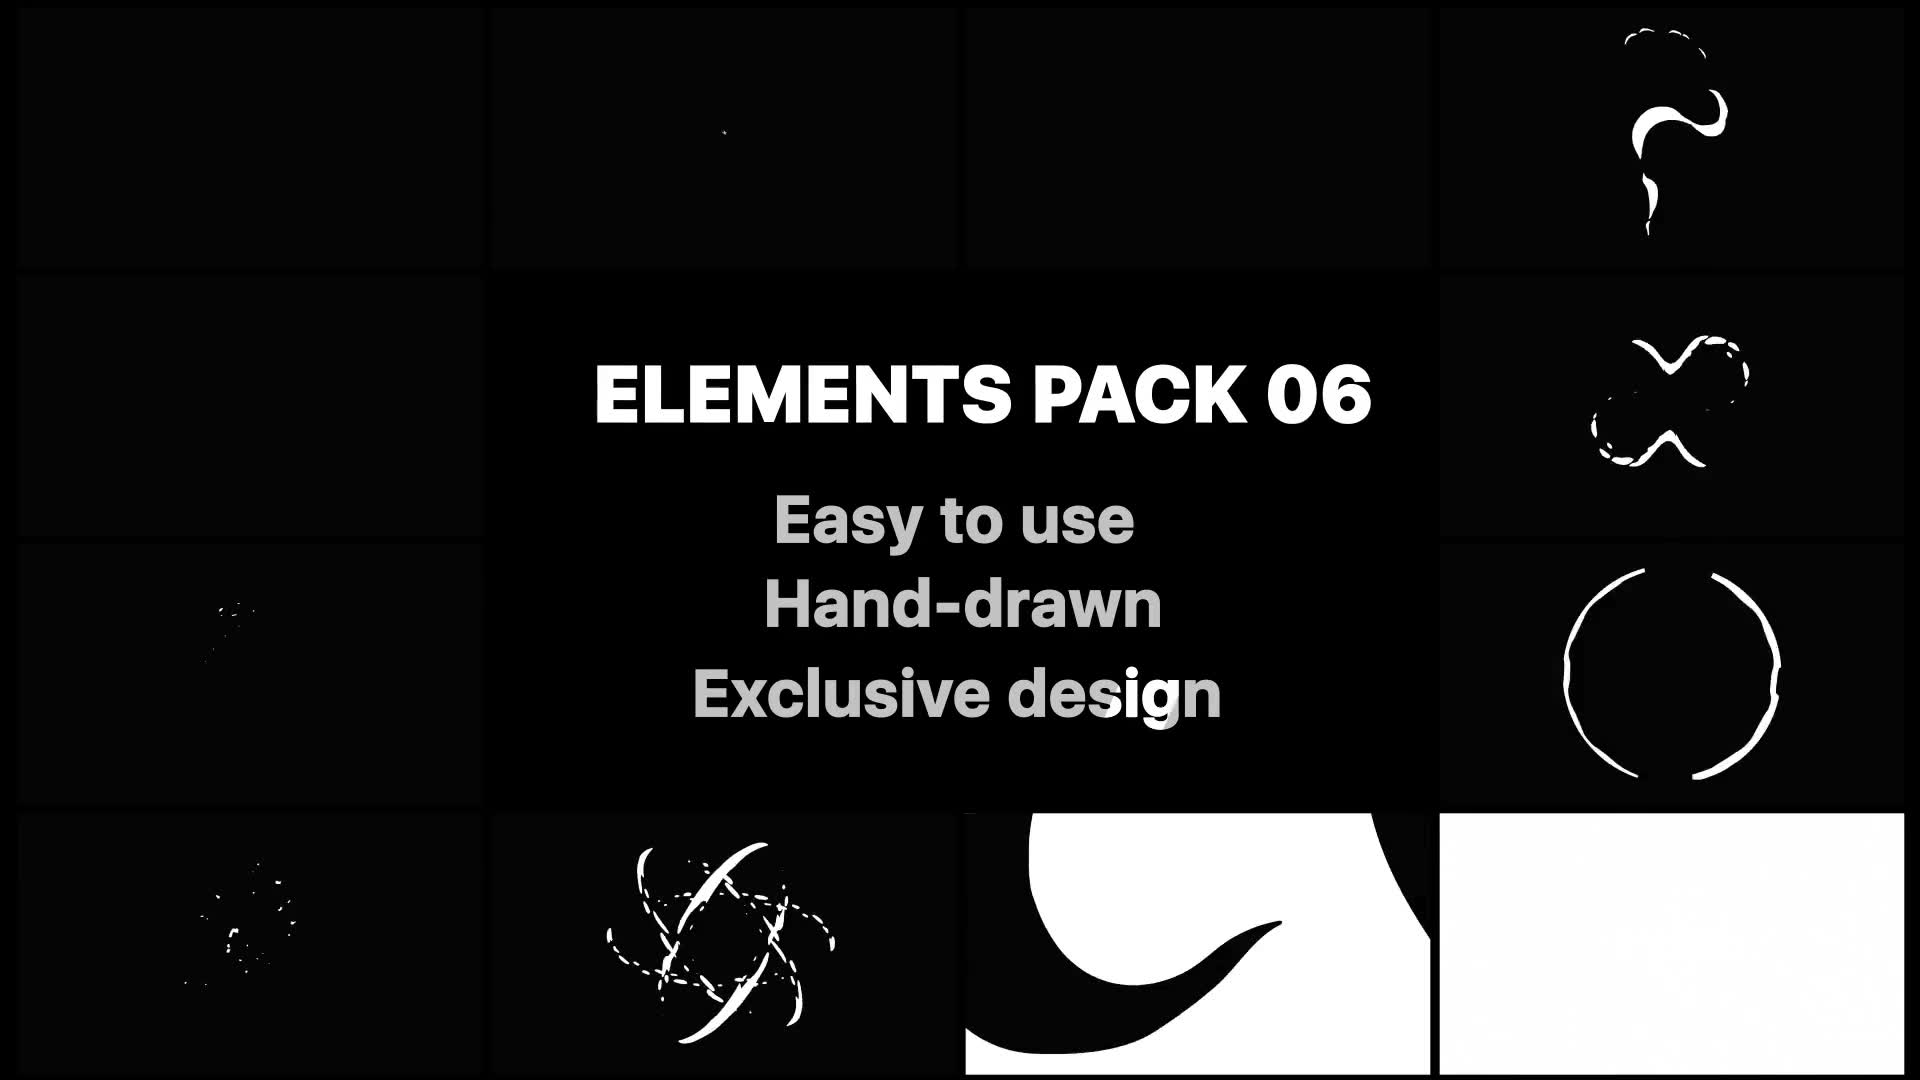 Elements Pack 06 | Premiere Pro MOGRT Videohive 25936105 Premiere Pro Image 2